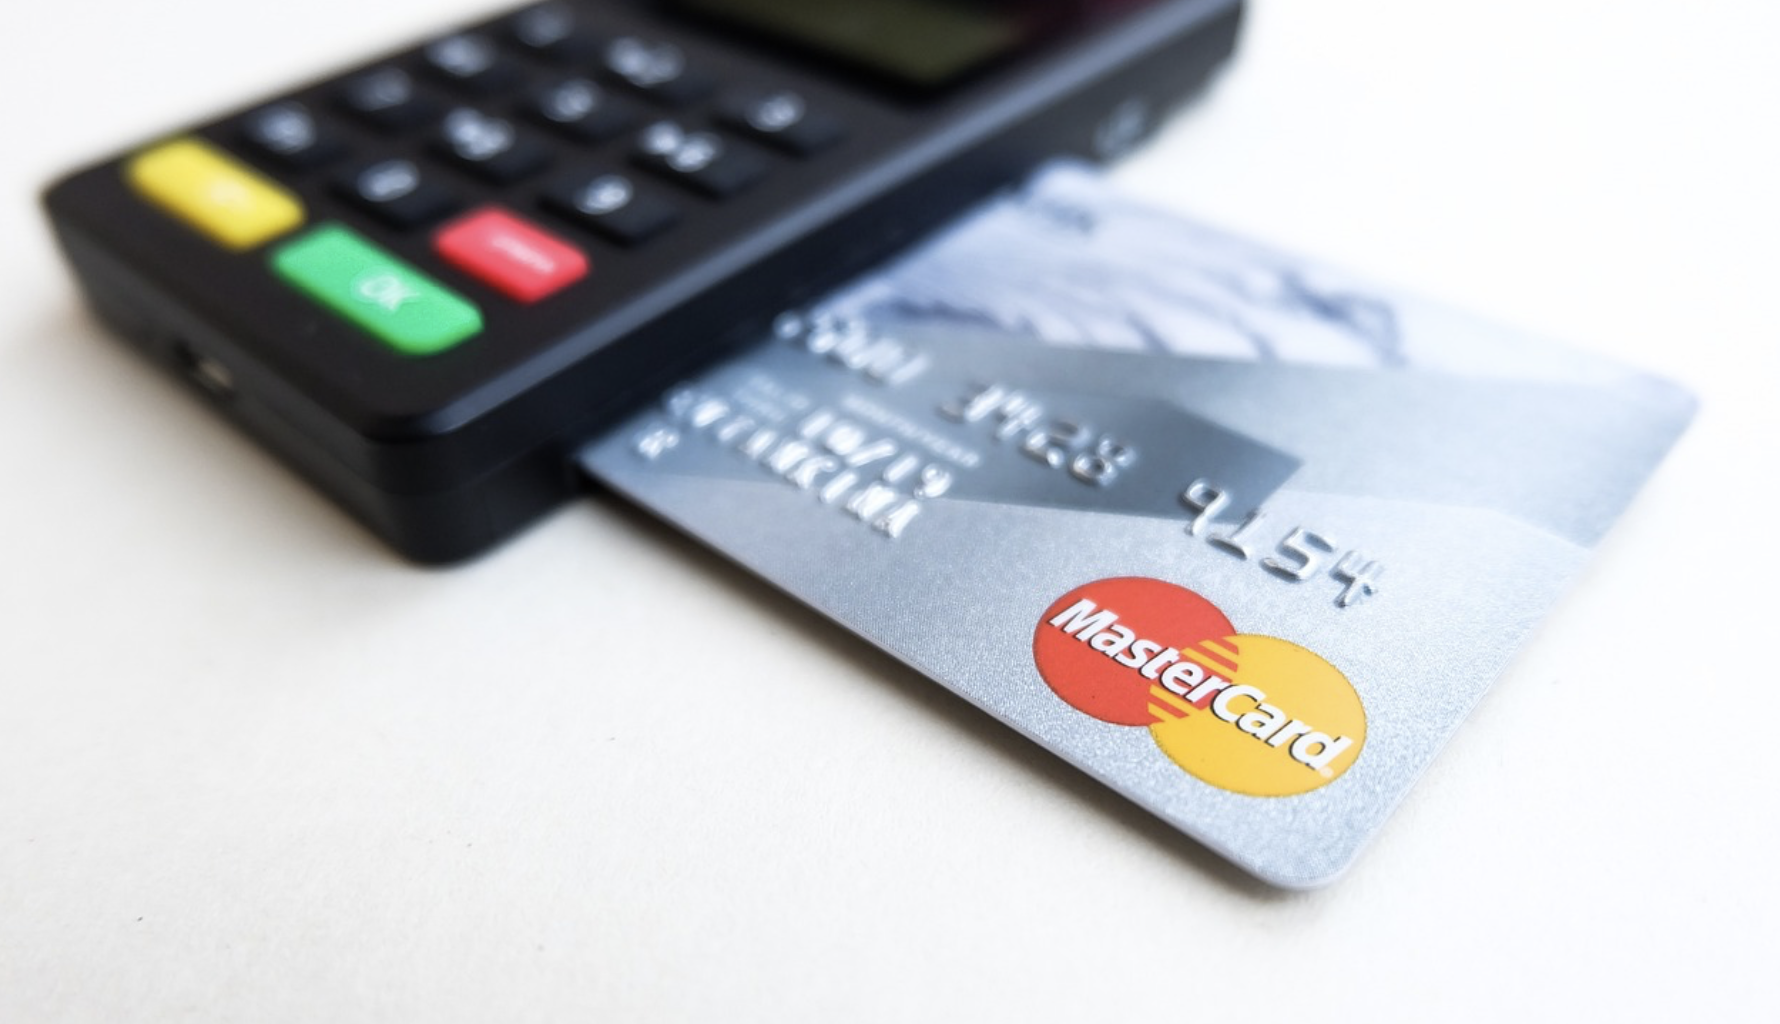 신용카드와 신용카드단말기를 찍은 사진